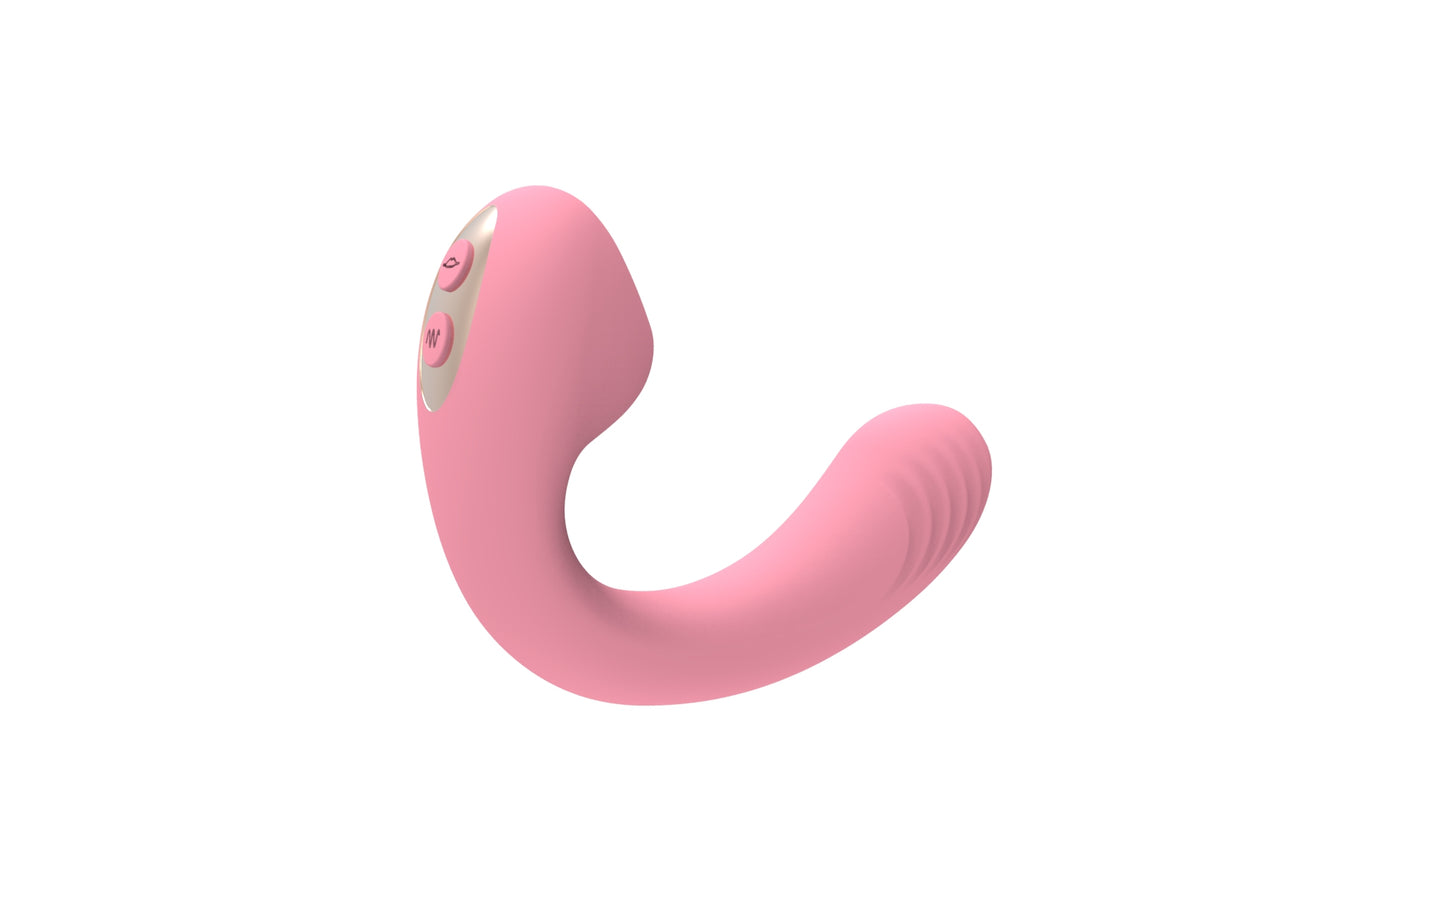 魅雅 陰蒂吮吸按摩棒 陰道開發 女性成人用品 粉色